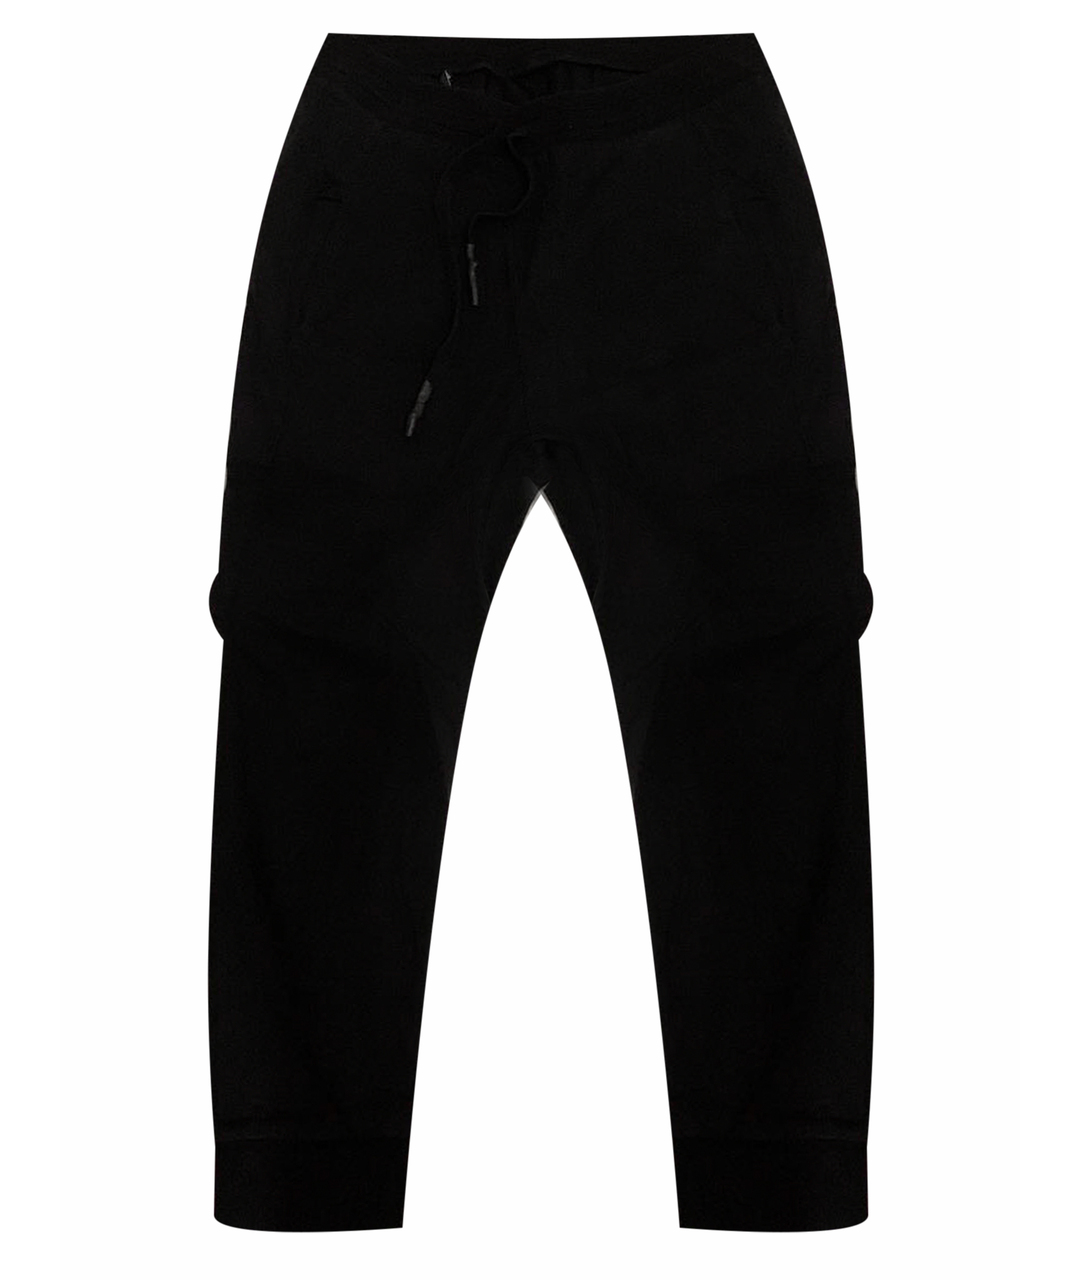 11 BY BORIS BIDJAN SABERI Черные хлопко-эластановые повседневные брюки, фото 1